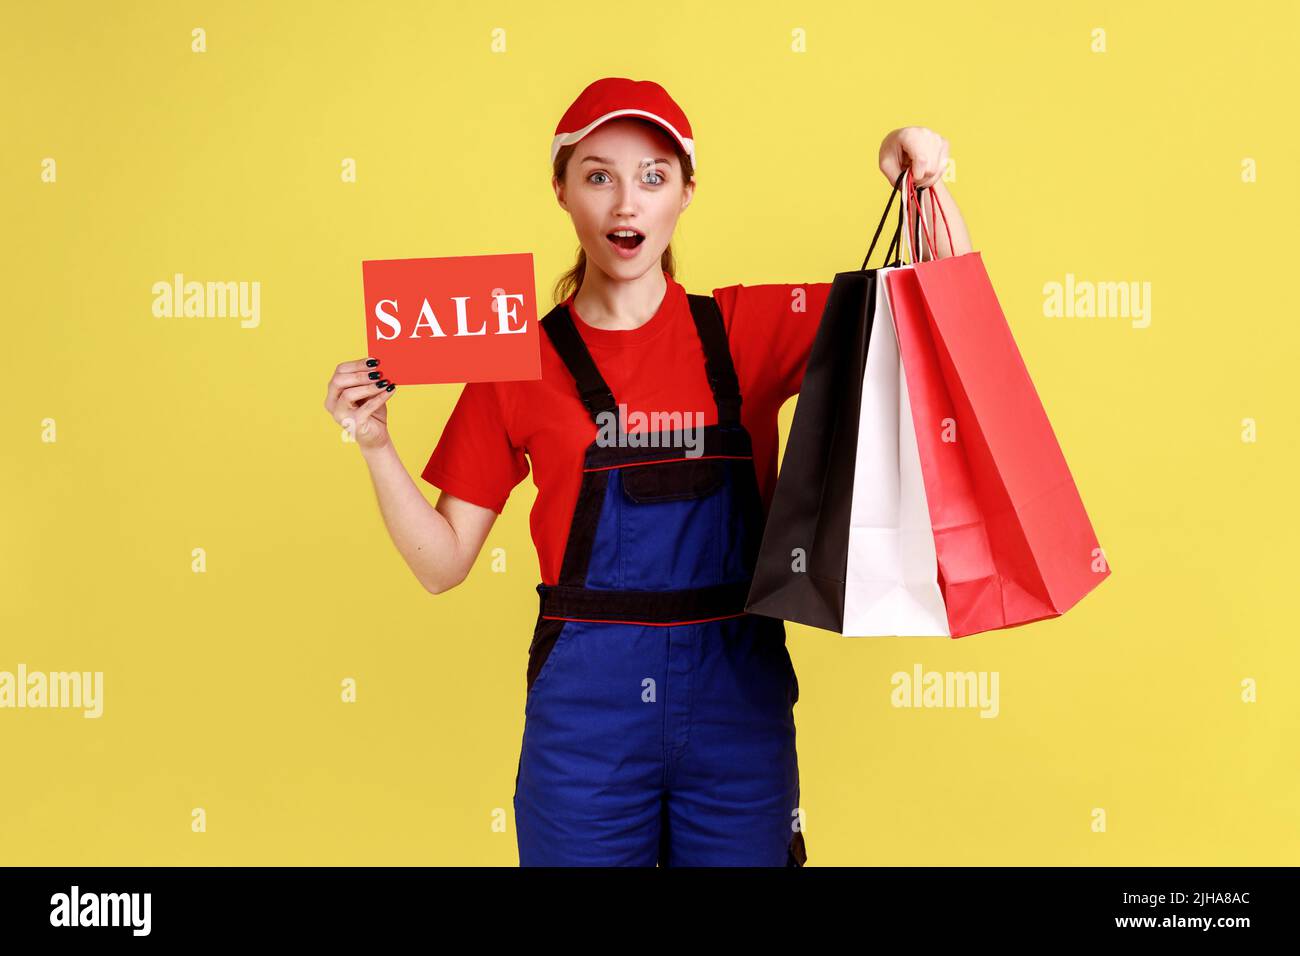 Portrait einer überraschten Lieferfrau, die mit Einkaufstaschen und Karte mit Verkaufsaufschrift steht, Overalls und roter Mütze trägt. Innenaufnahme des Studios isoliert auf gelbem Hintergrund. Stockfoto